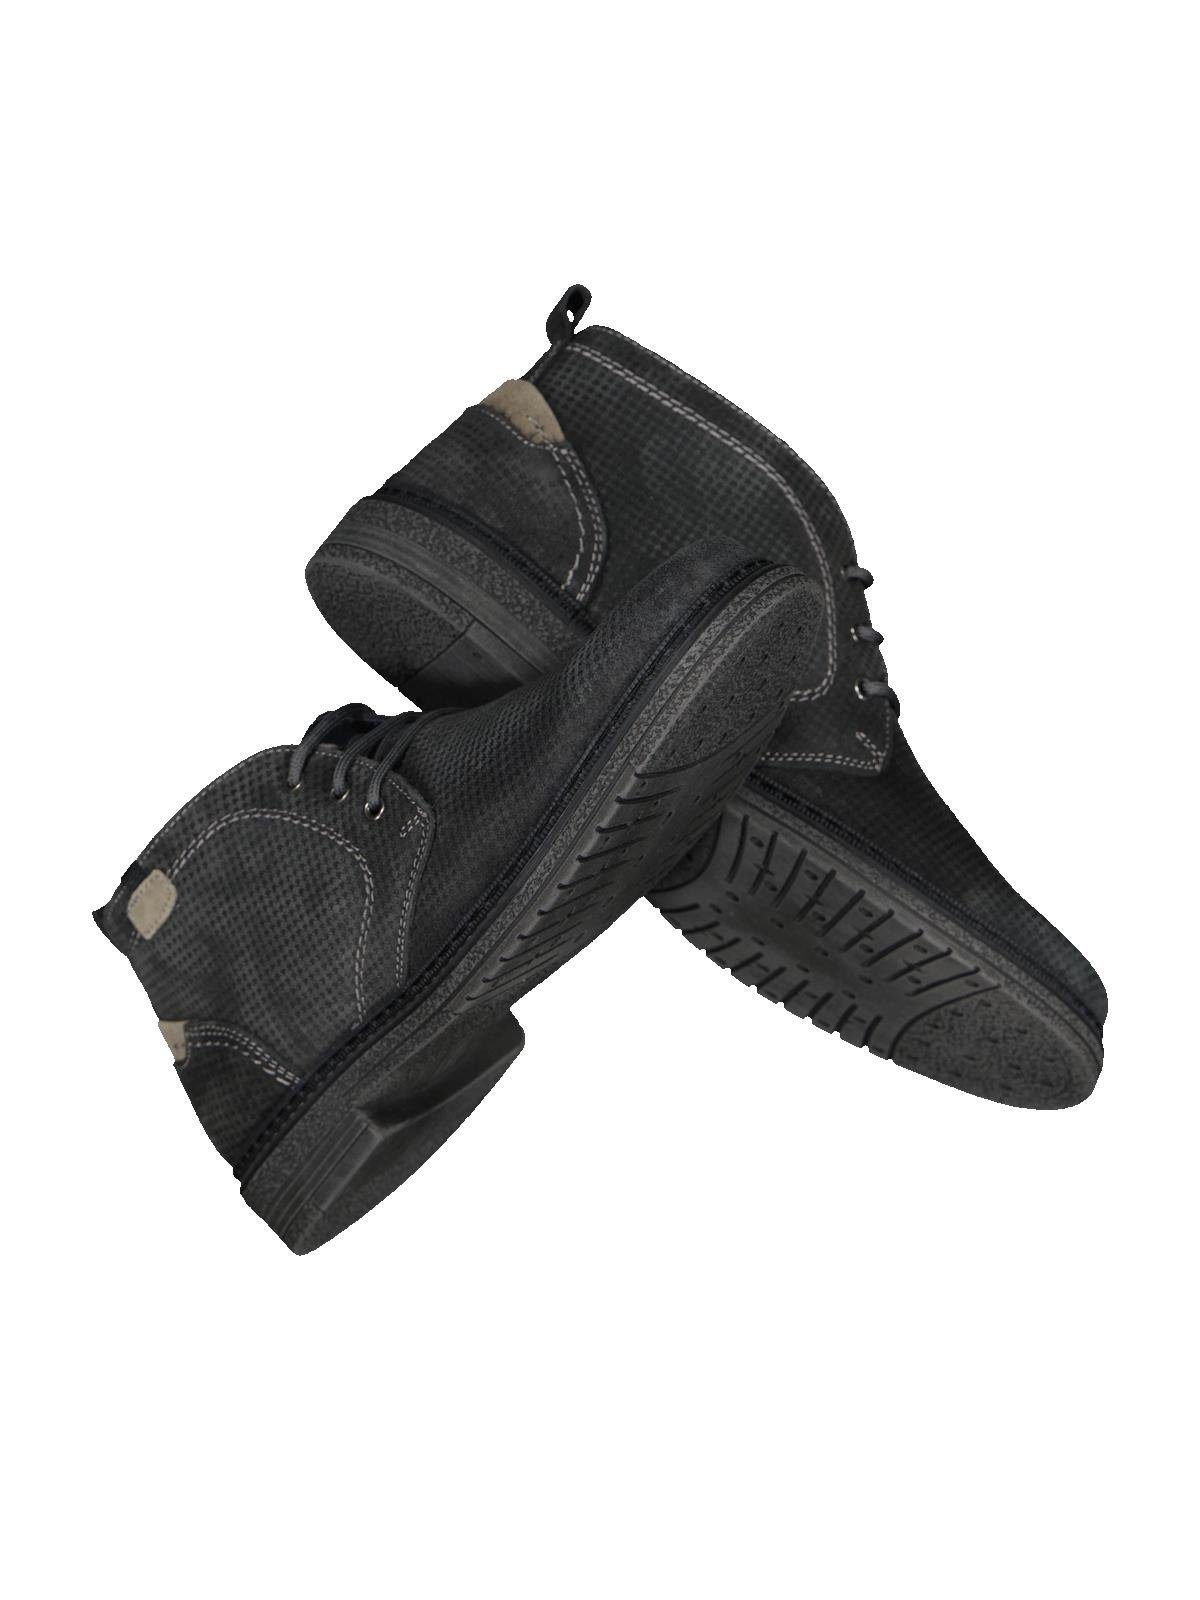 Schuhe Stiefeletten Engbers Boot mit feiner Struktur Stiefelette